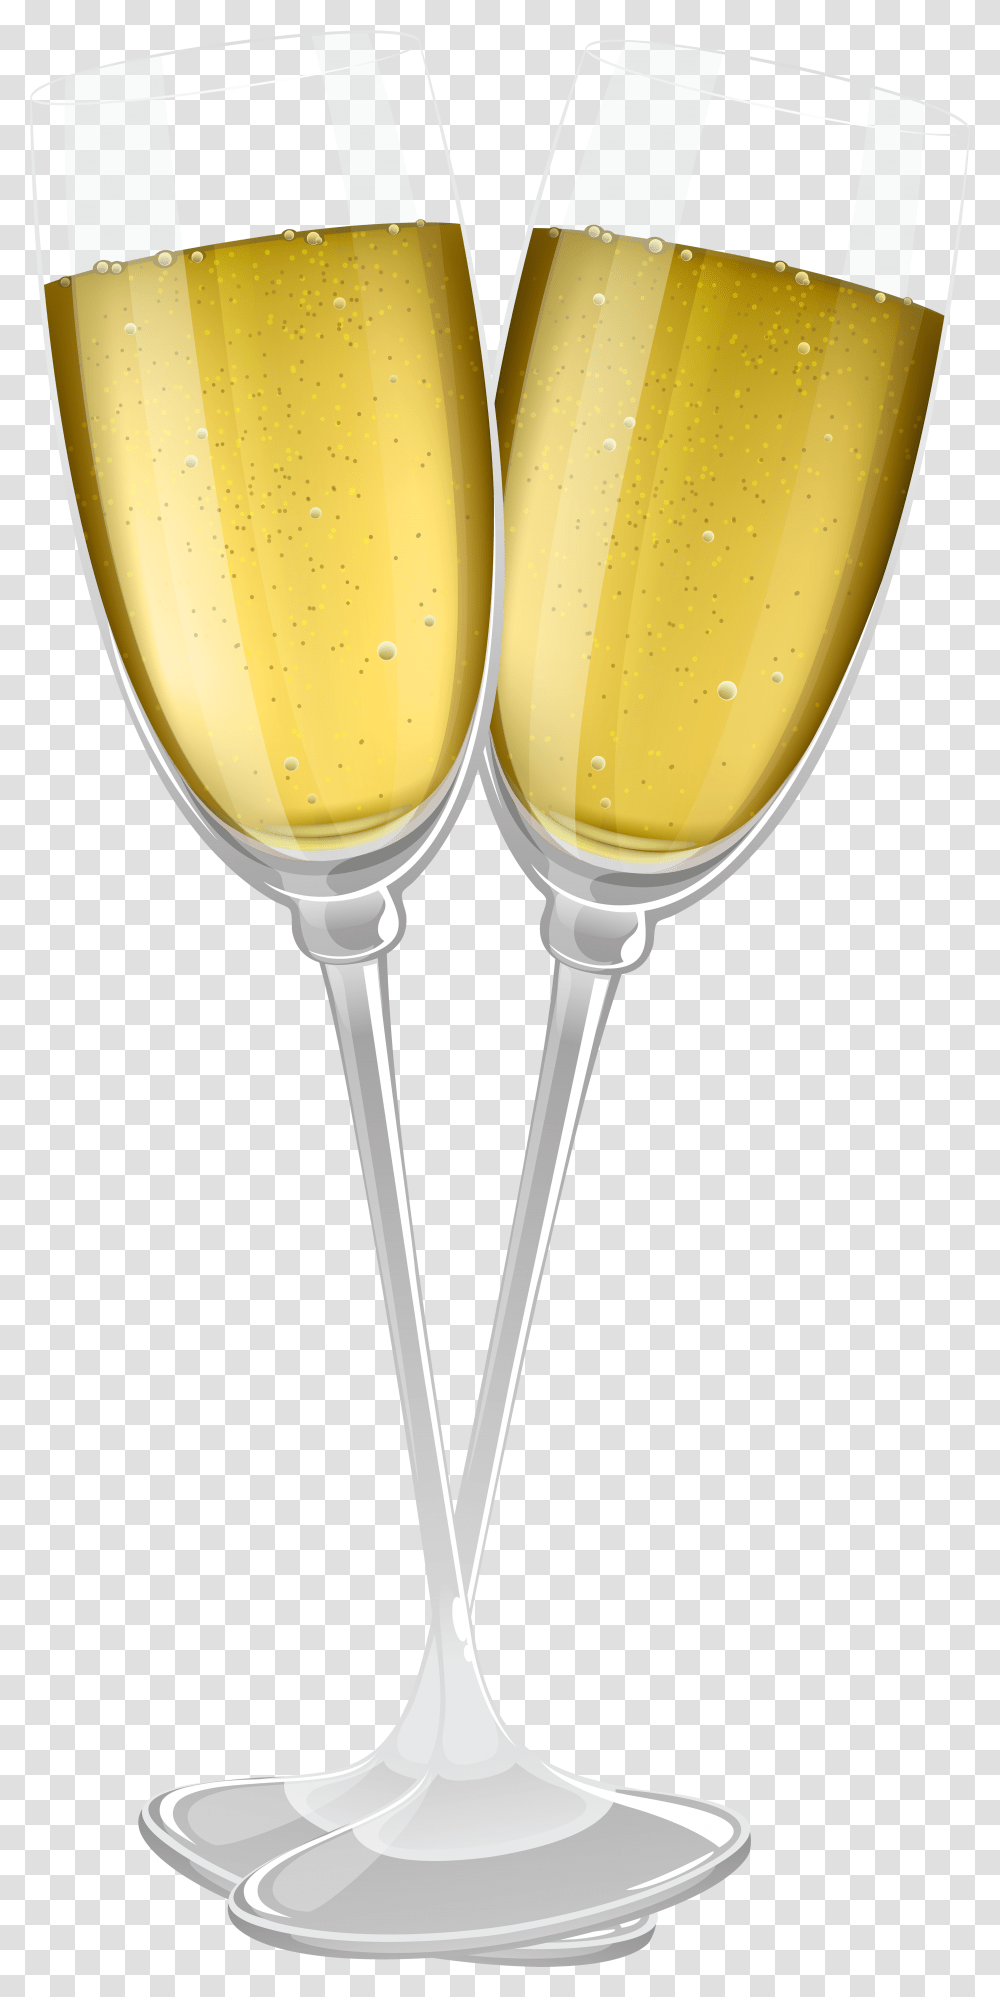 Glasses Of Champagne Glasses Wine, Goblet, Beverage, Drink, Wine Glass Transparent Png